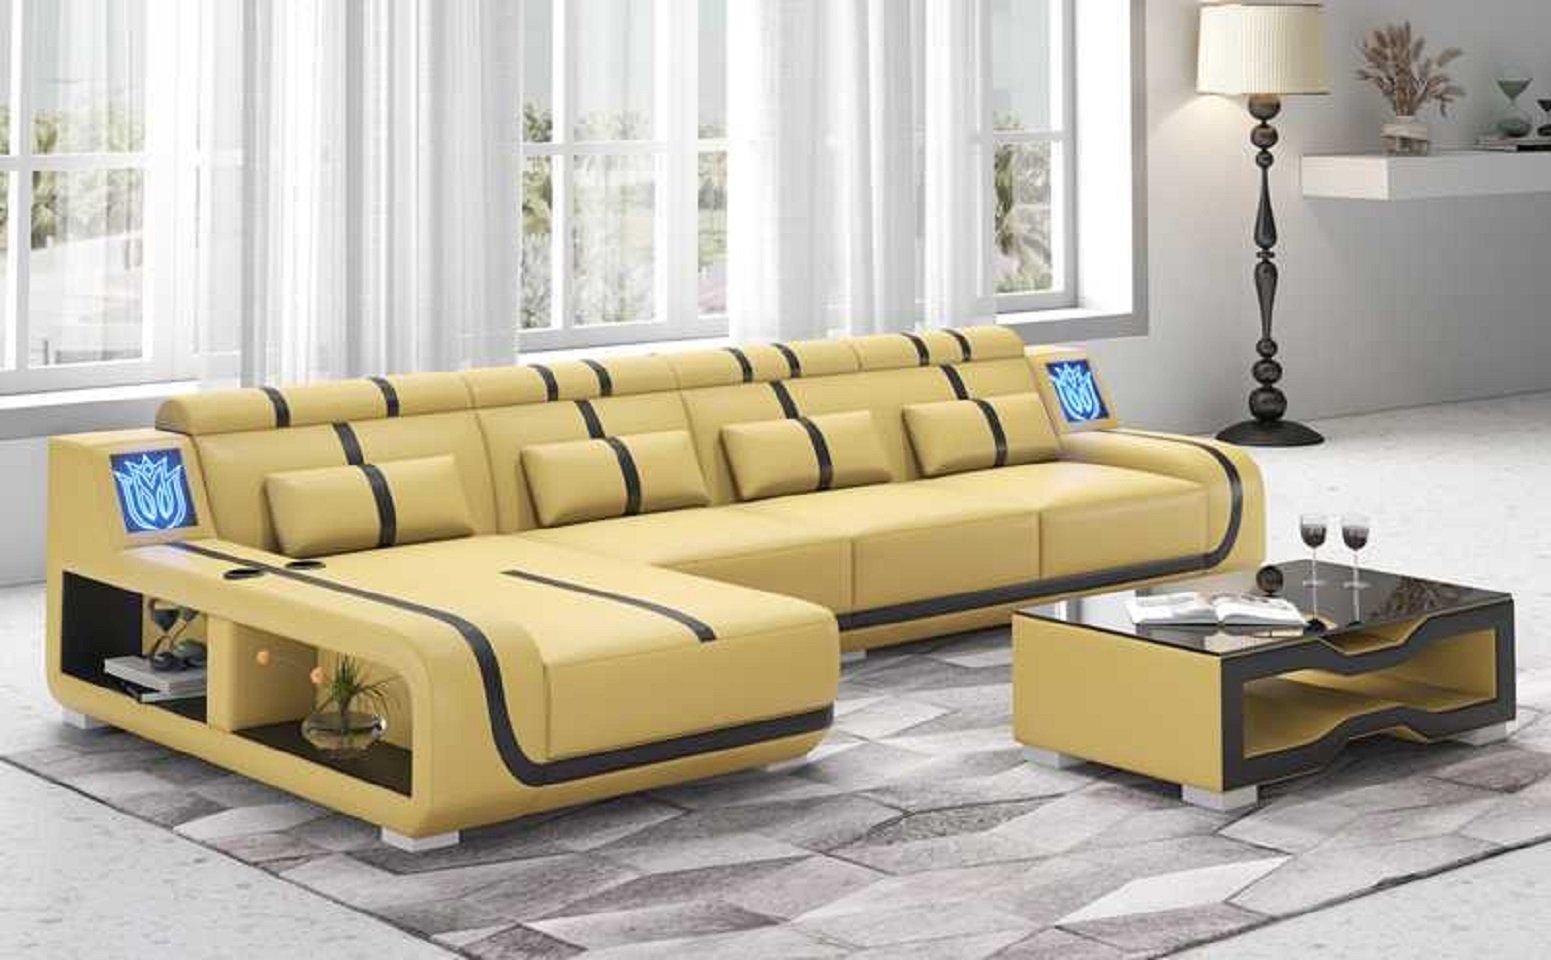 Europe in Liege Teile, Ecksofa Design couchen, L Couch Ecksofa JVmoebel 3 Form Made Modern Beige Sofa